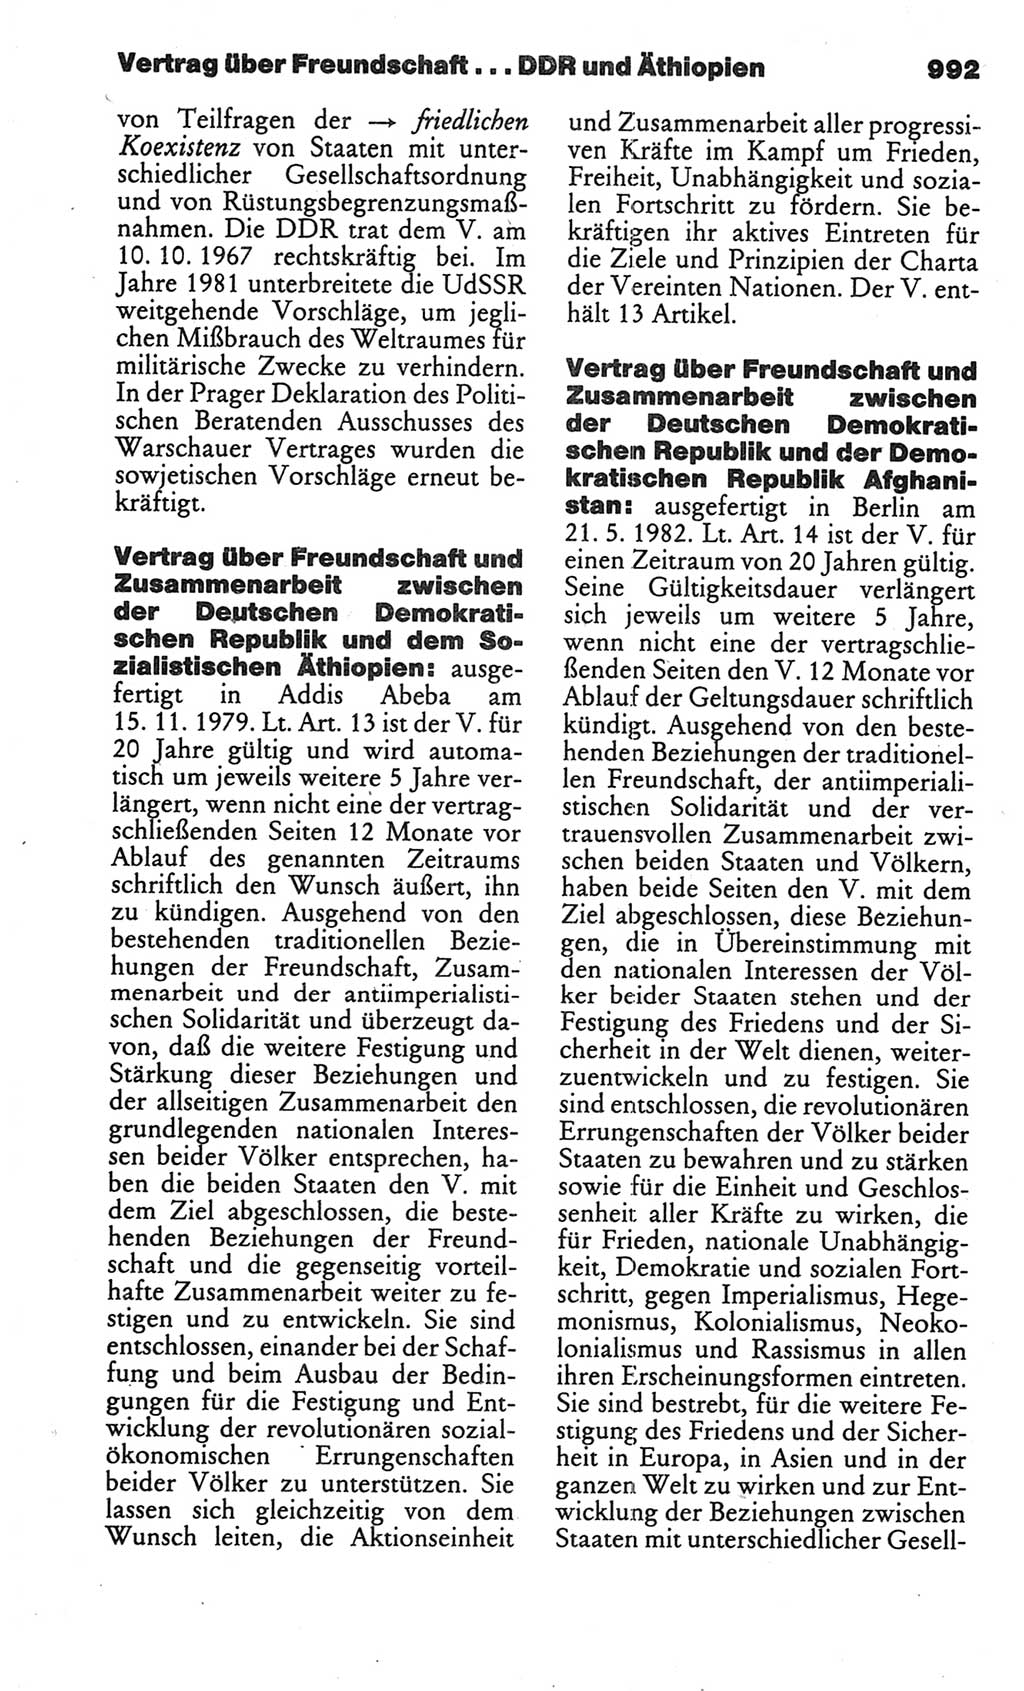 Kleines politisches Wörterbuch [Deutsche Demokratische Republik (DDR)] 1986, Seite 992 (Kl. pol. Wb. DDR 1986, S. 992)